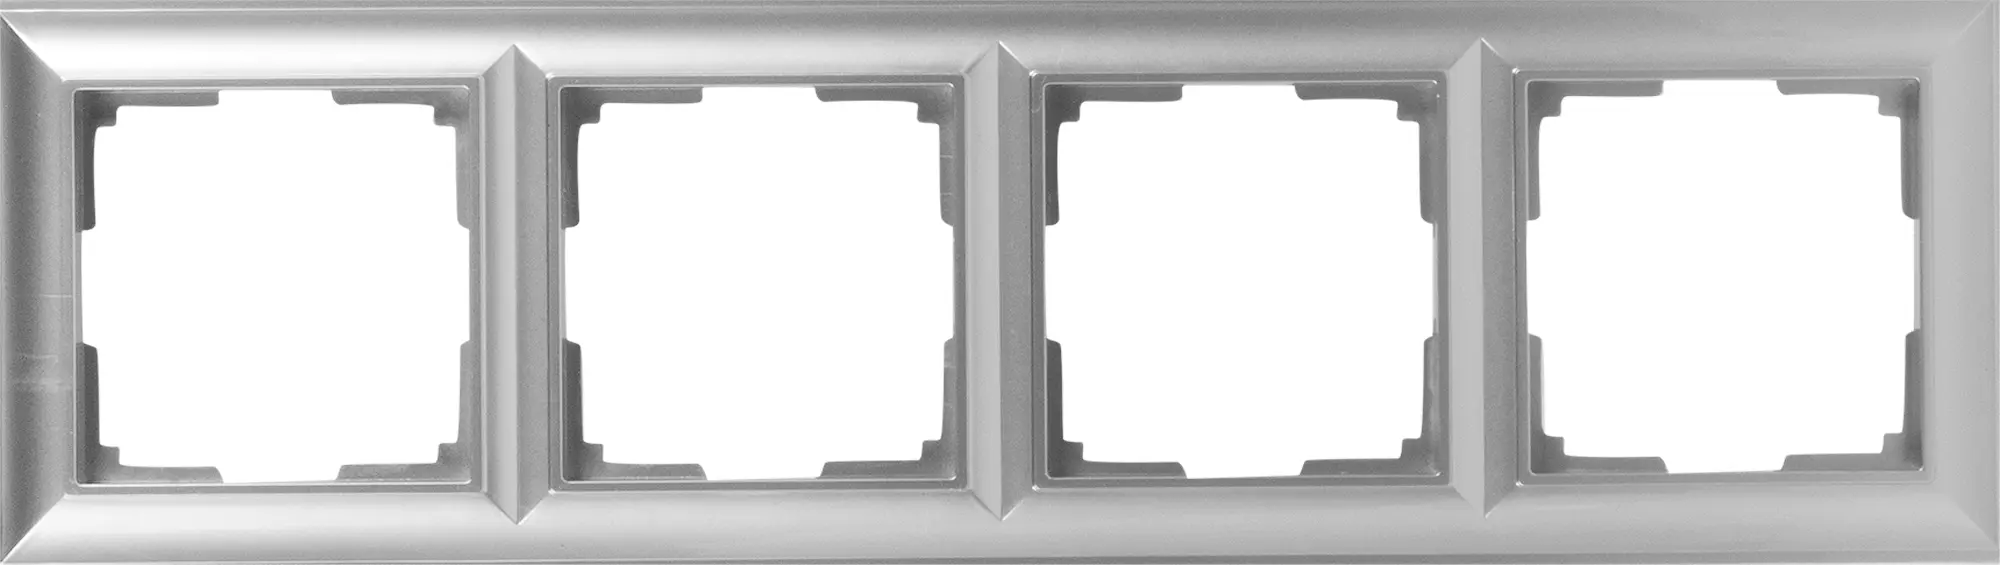 Рамка для розеток и выключателей Werkel Fiore 4 поста, цвет серебряный шланговое подключение fiore